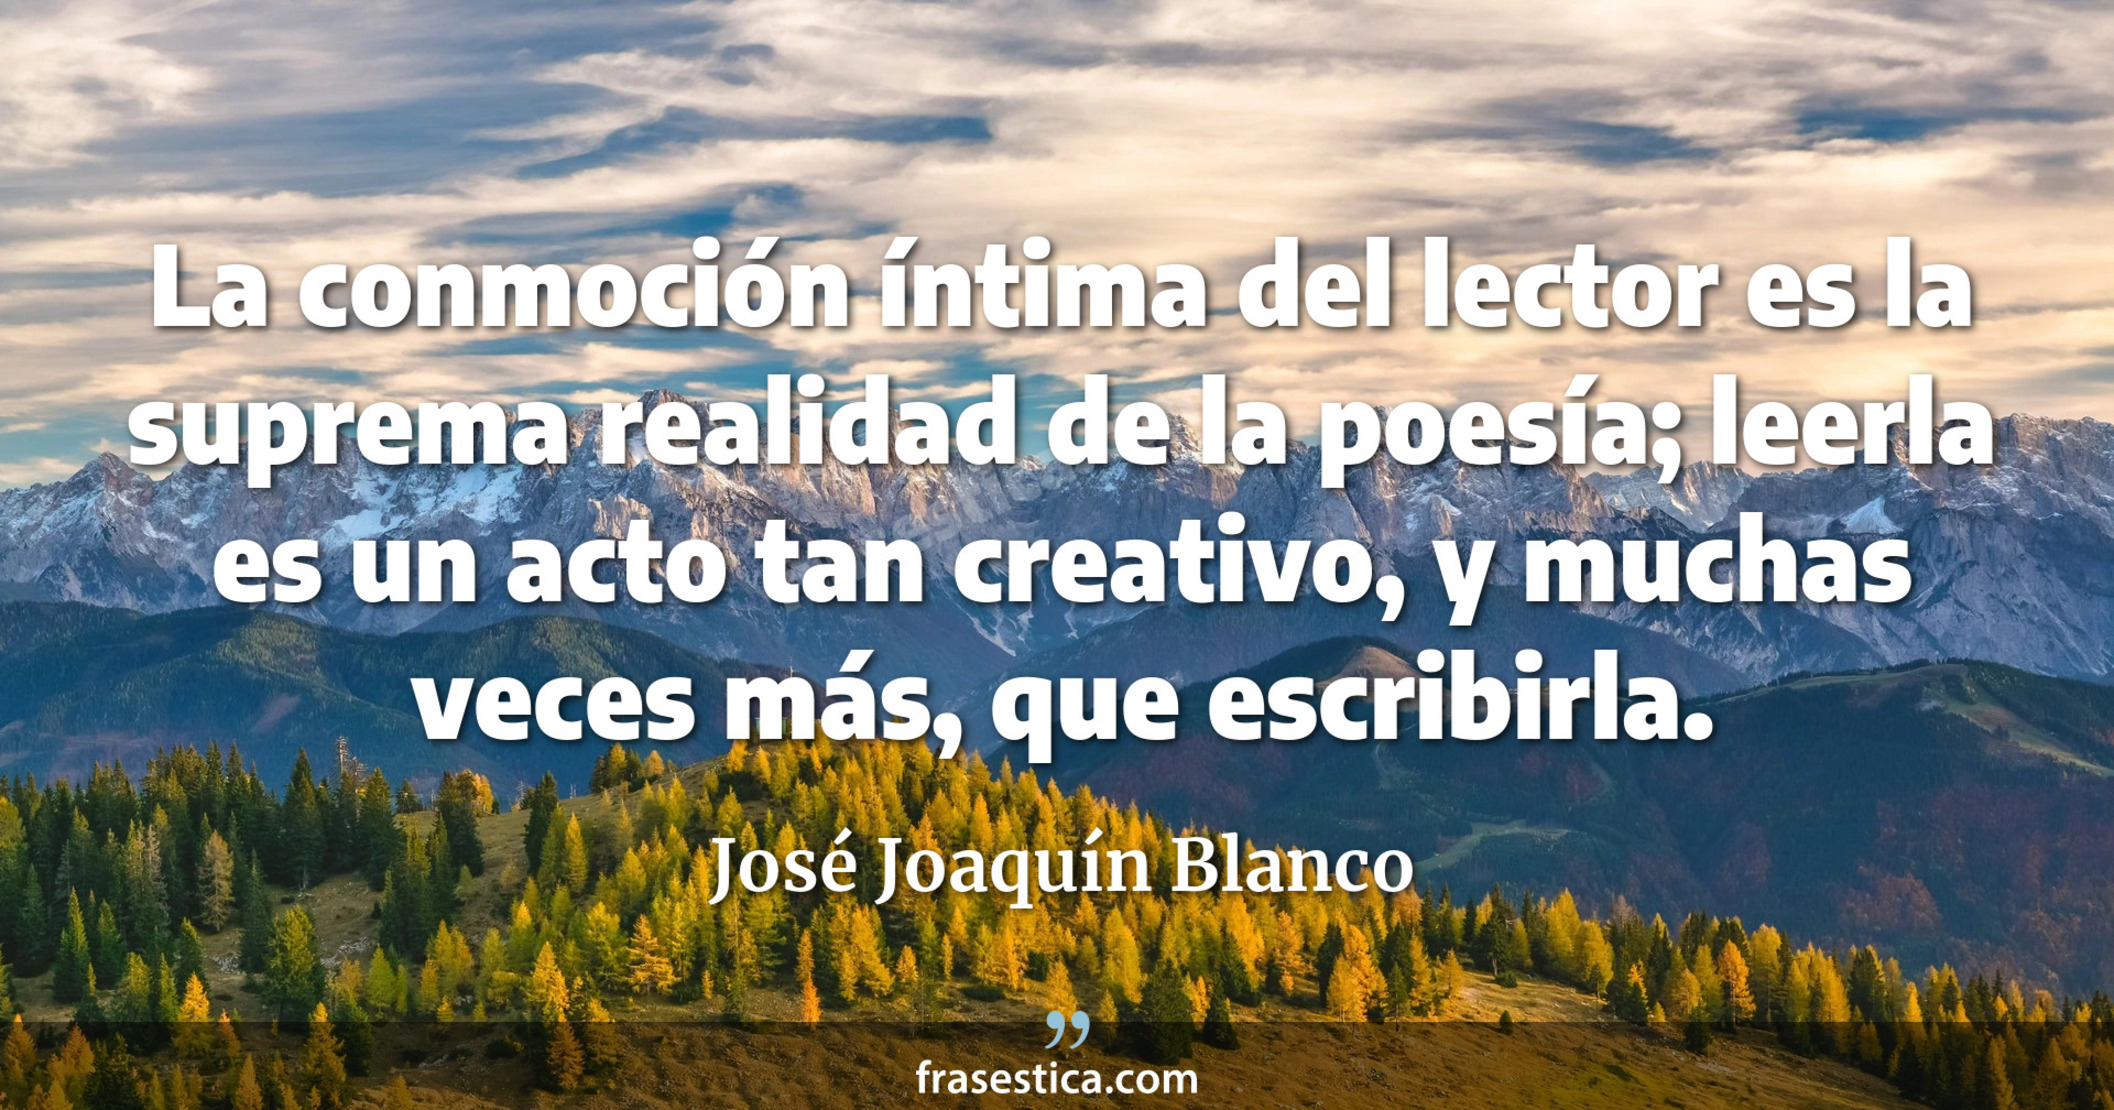 La conmoción íntima del lector es la suprema realidad de la poesía; leerla es un acto tan creativo, y muchas veces más, que escribirla. - José Joaquín Blanco